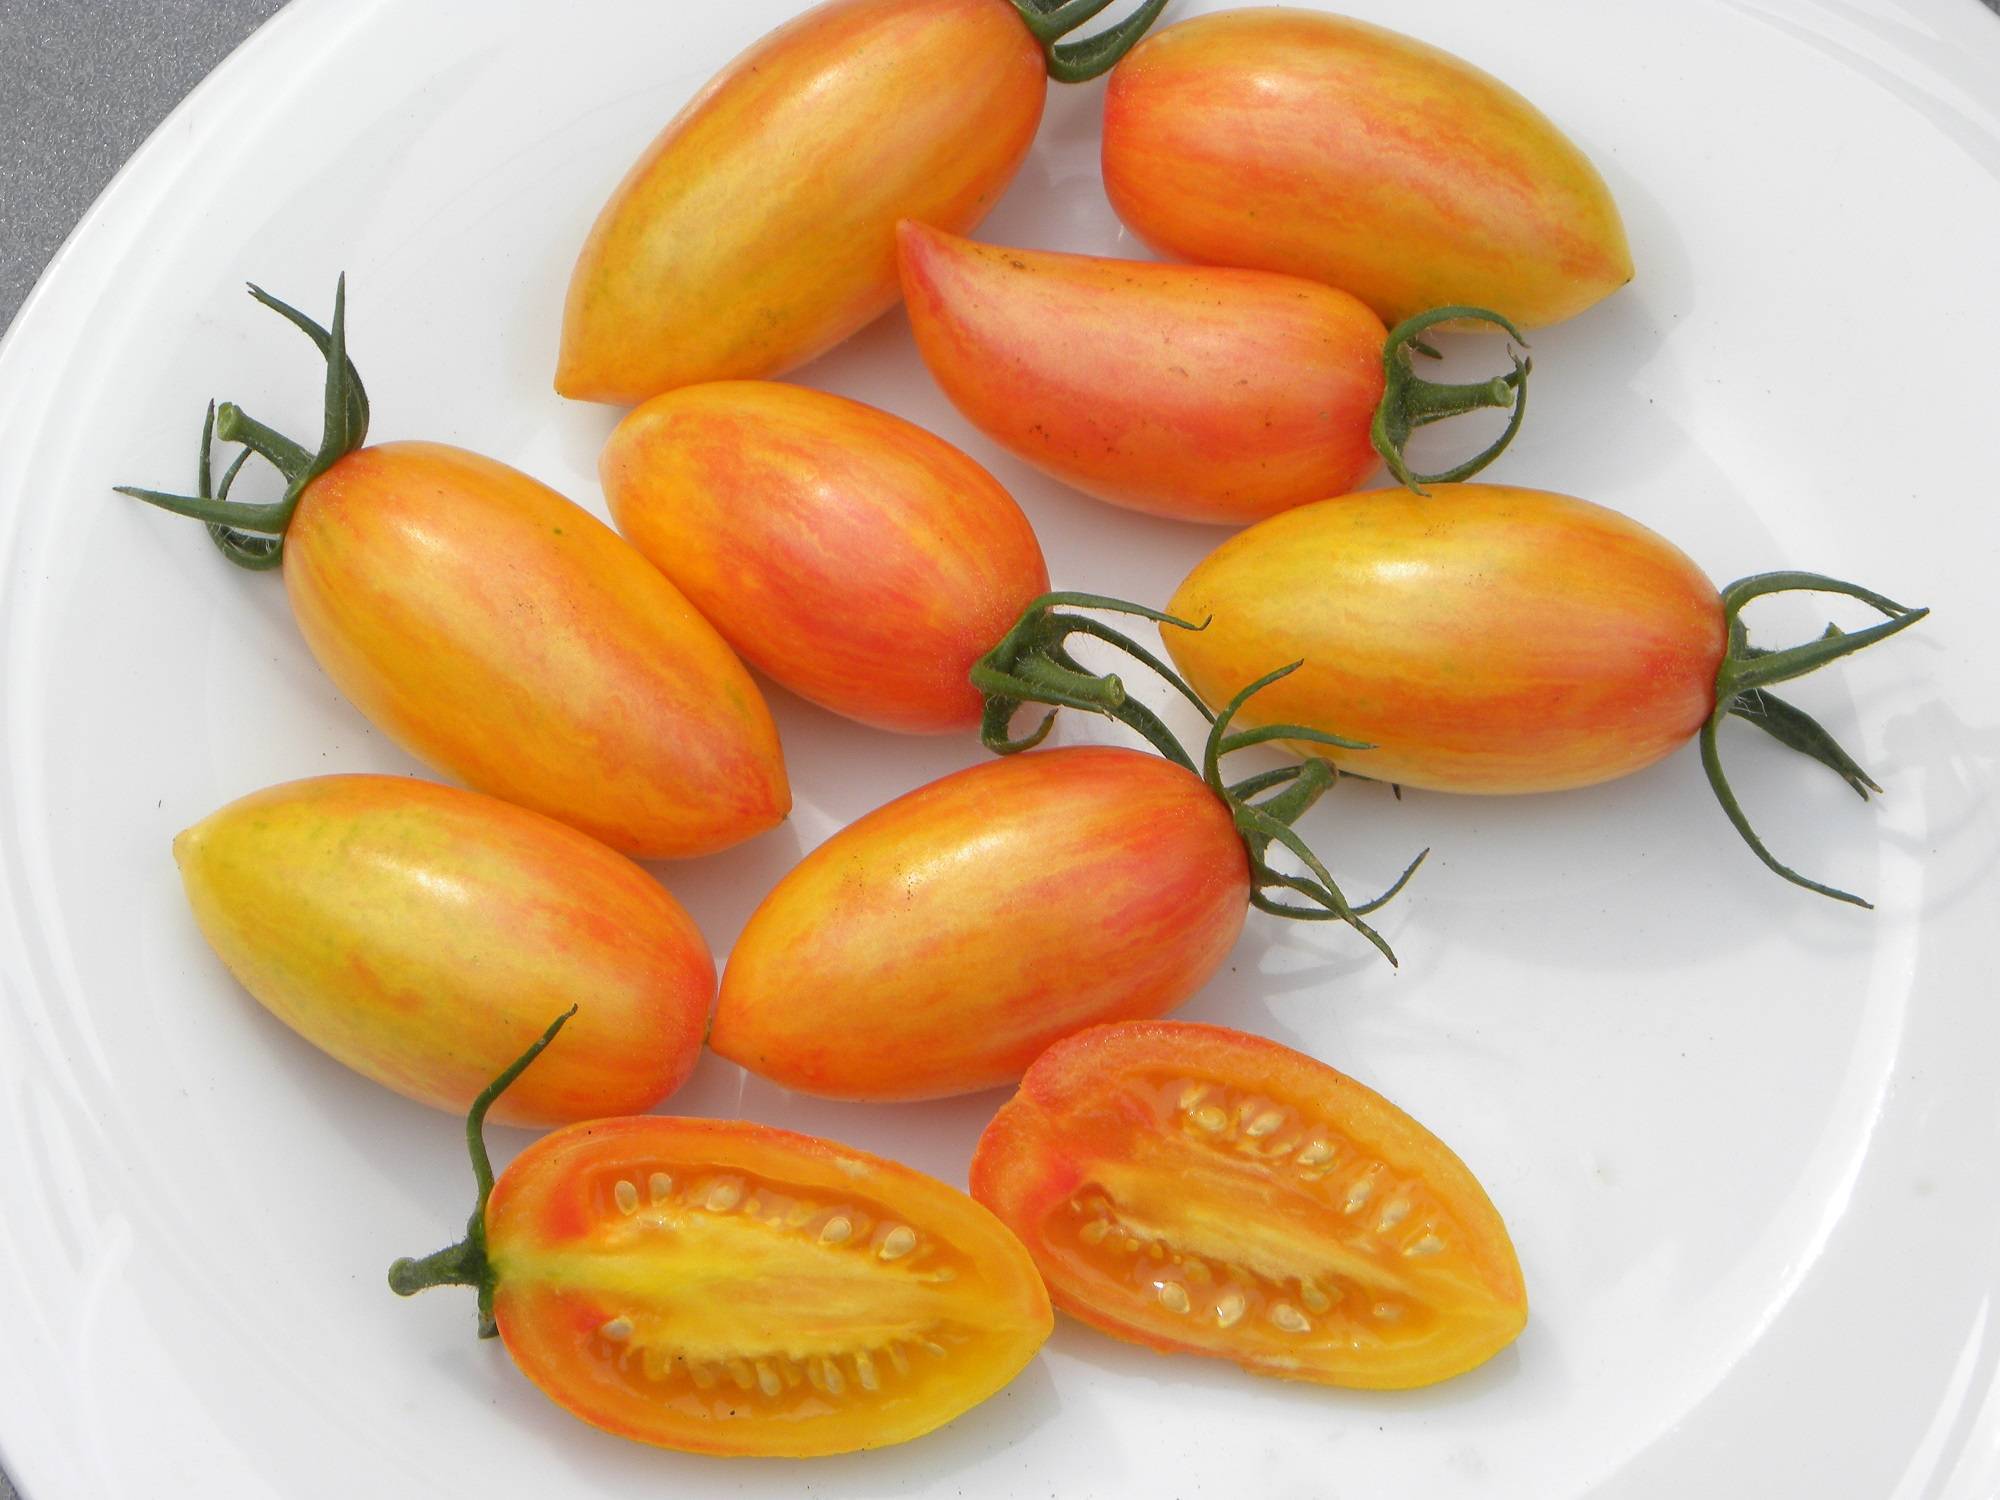 Описание томата Стыдливый румянец (Blush) и особенности выращивания культуры